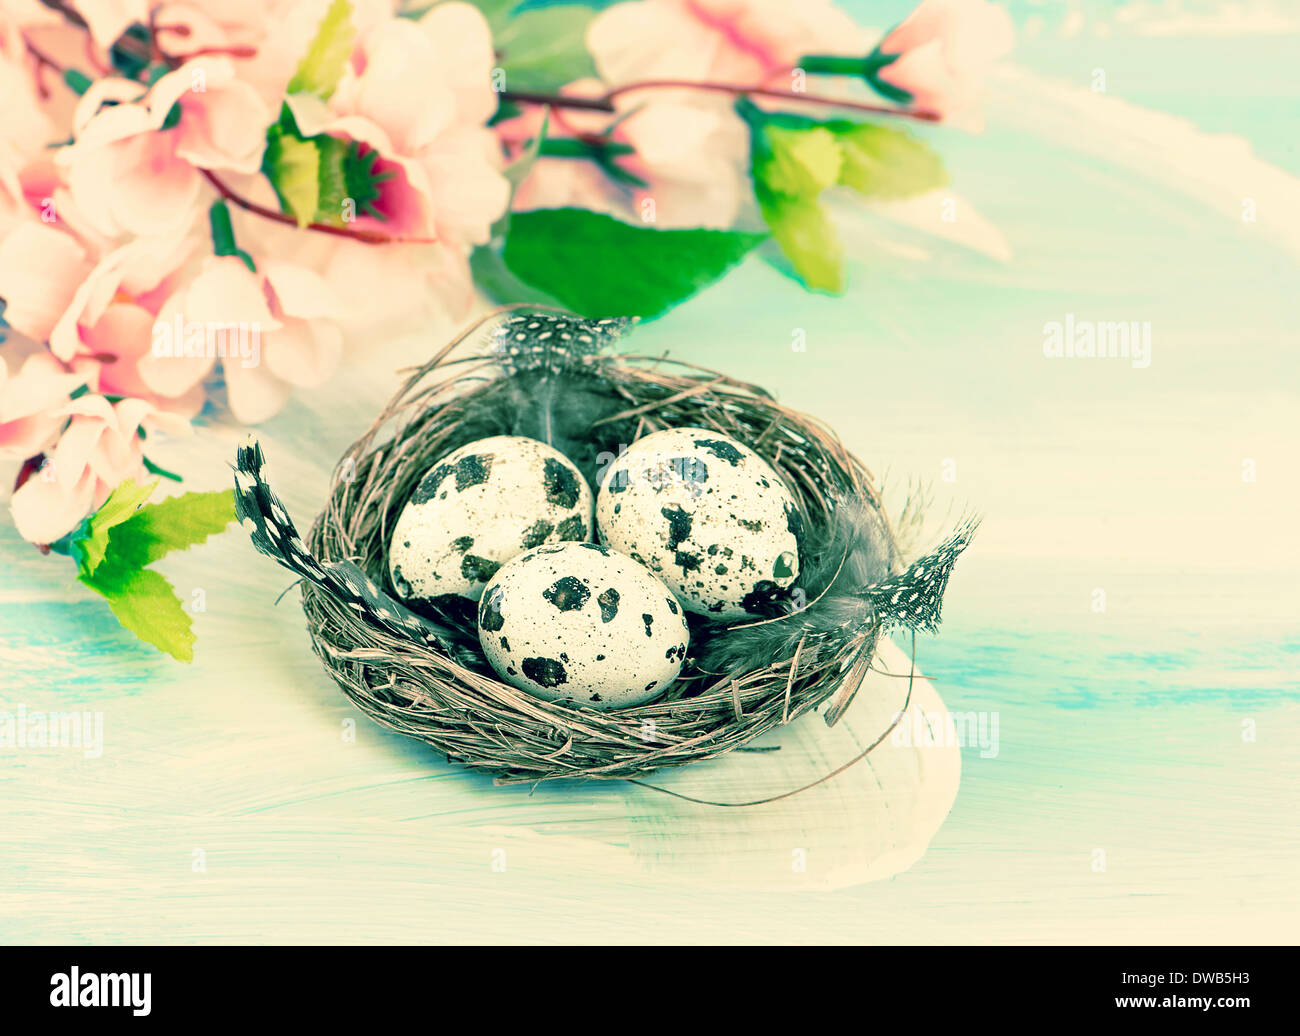 Décoration de Pâques avec des fleurs et des œufs dans le nid des oiseaux. Retro style tonique photo. Selective focus Banque D'Images